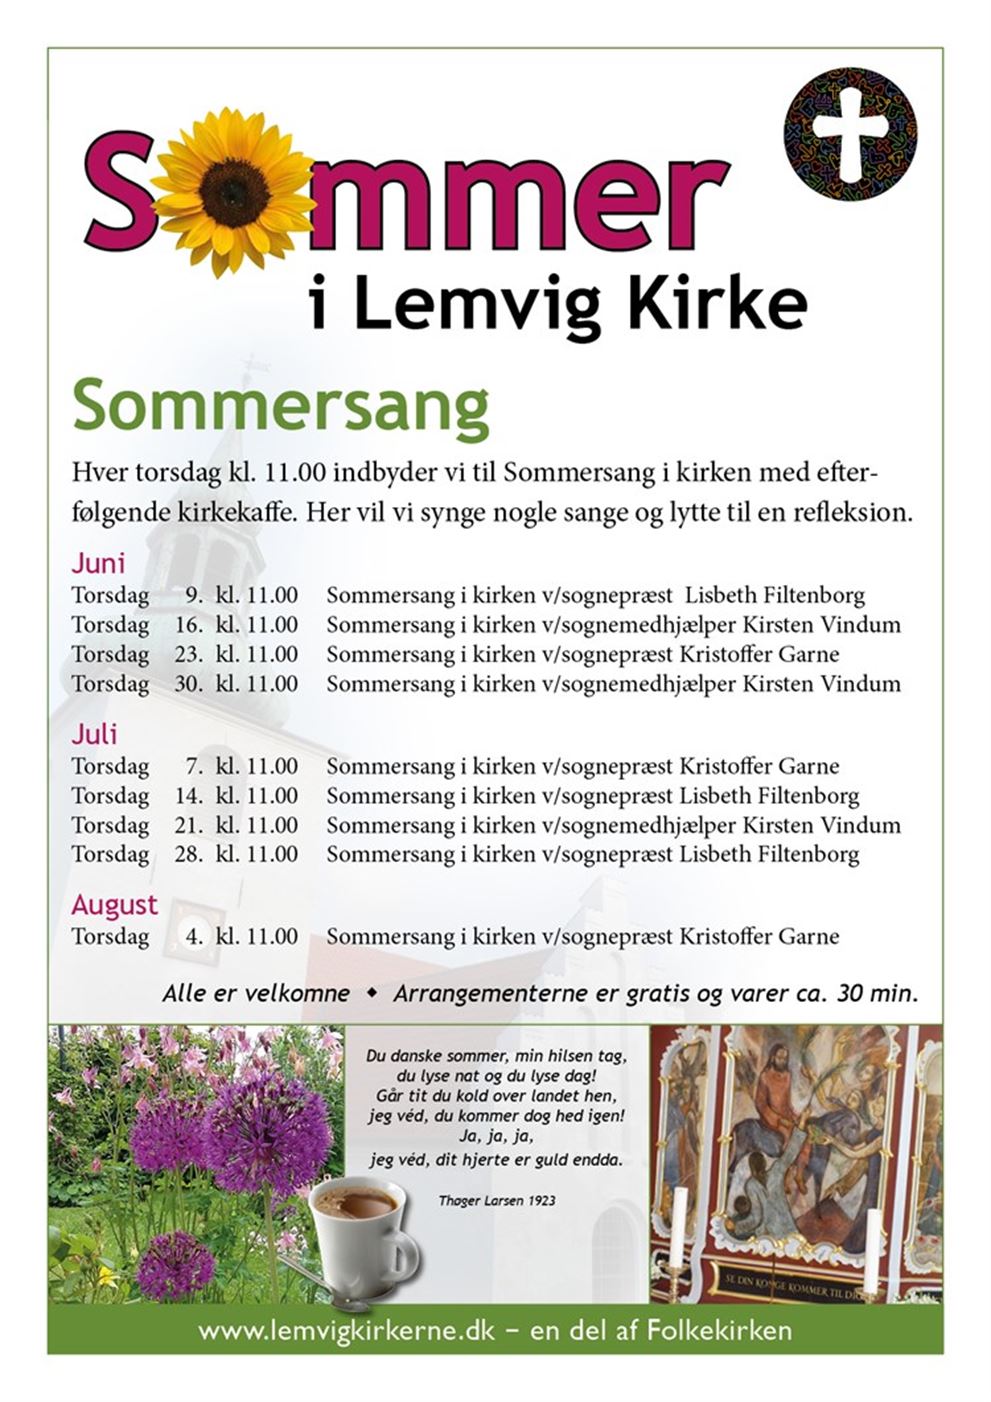 Sommersang Lemvig Kirke (7 juli)